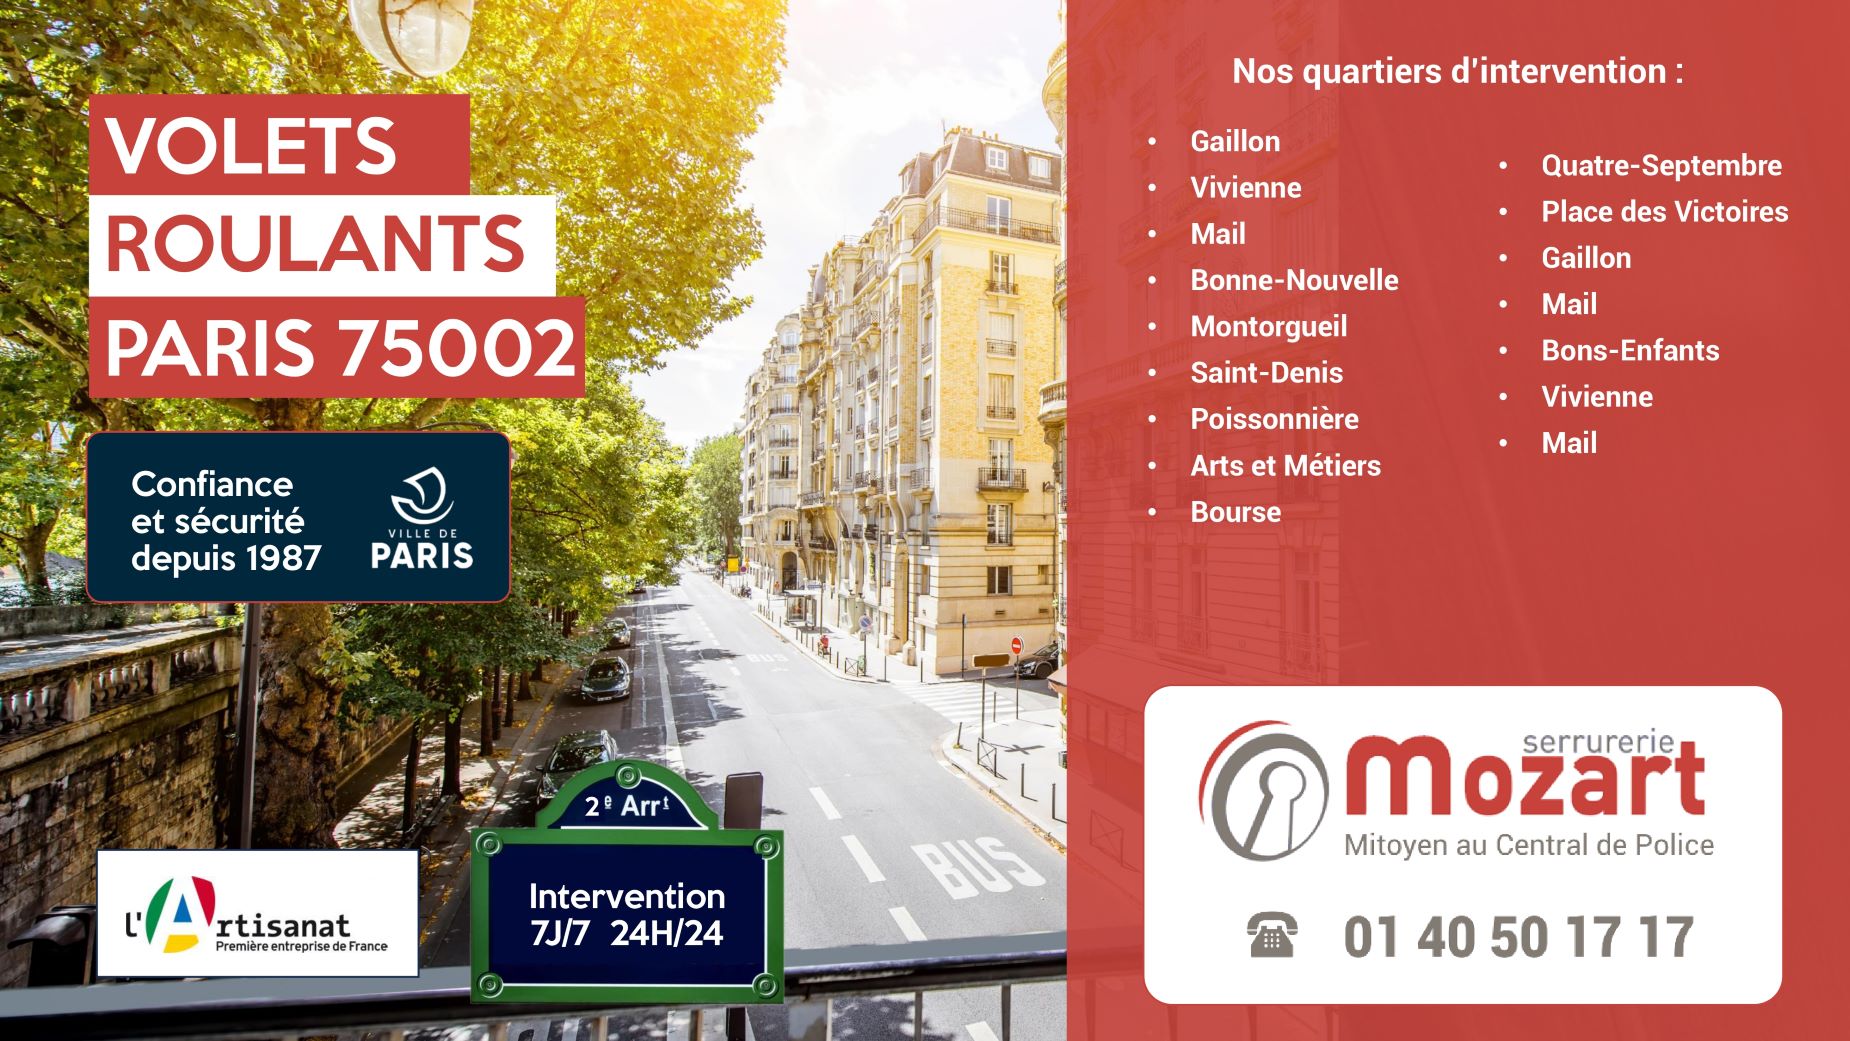 Réparation de volets roulants par Serrurerie Mozart dans le 2e arrondissement - Rue Montorgueil